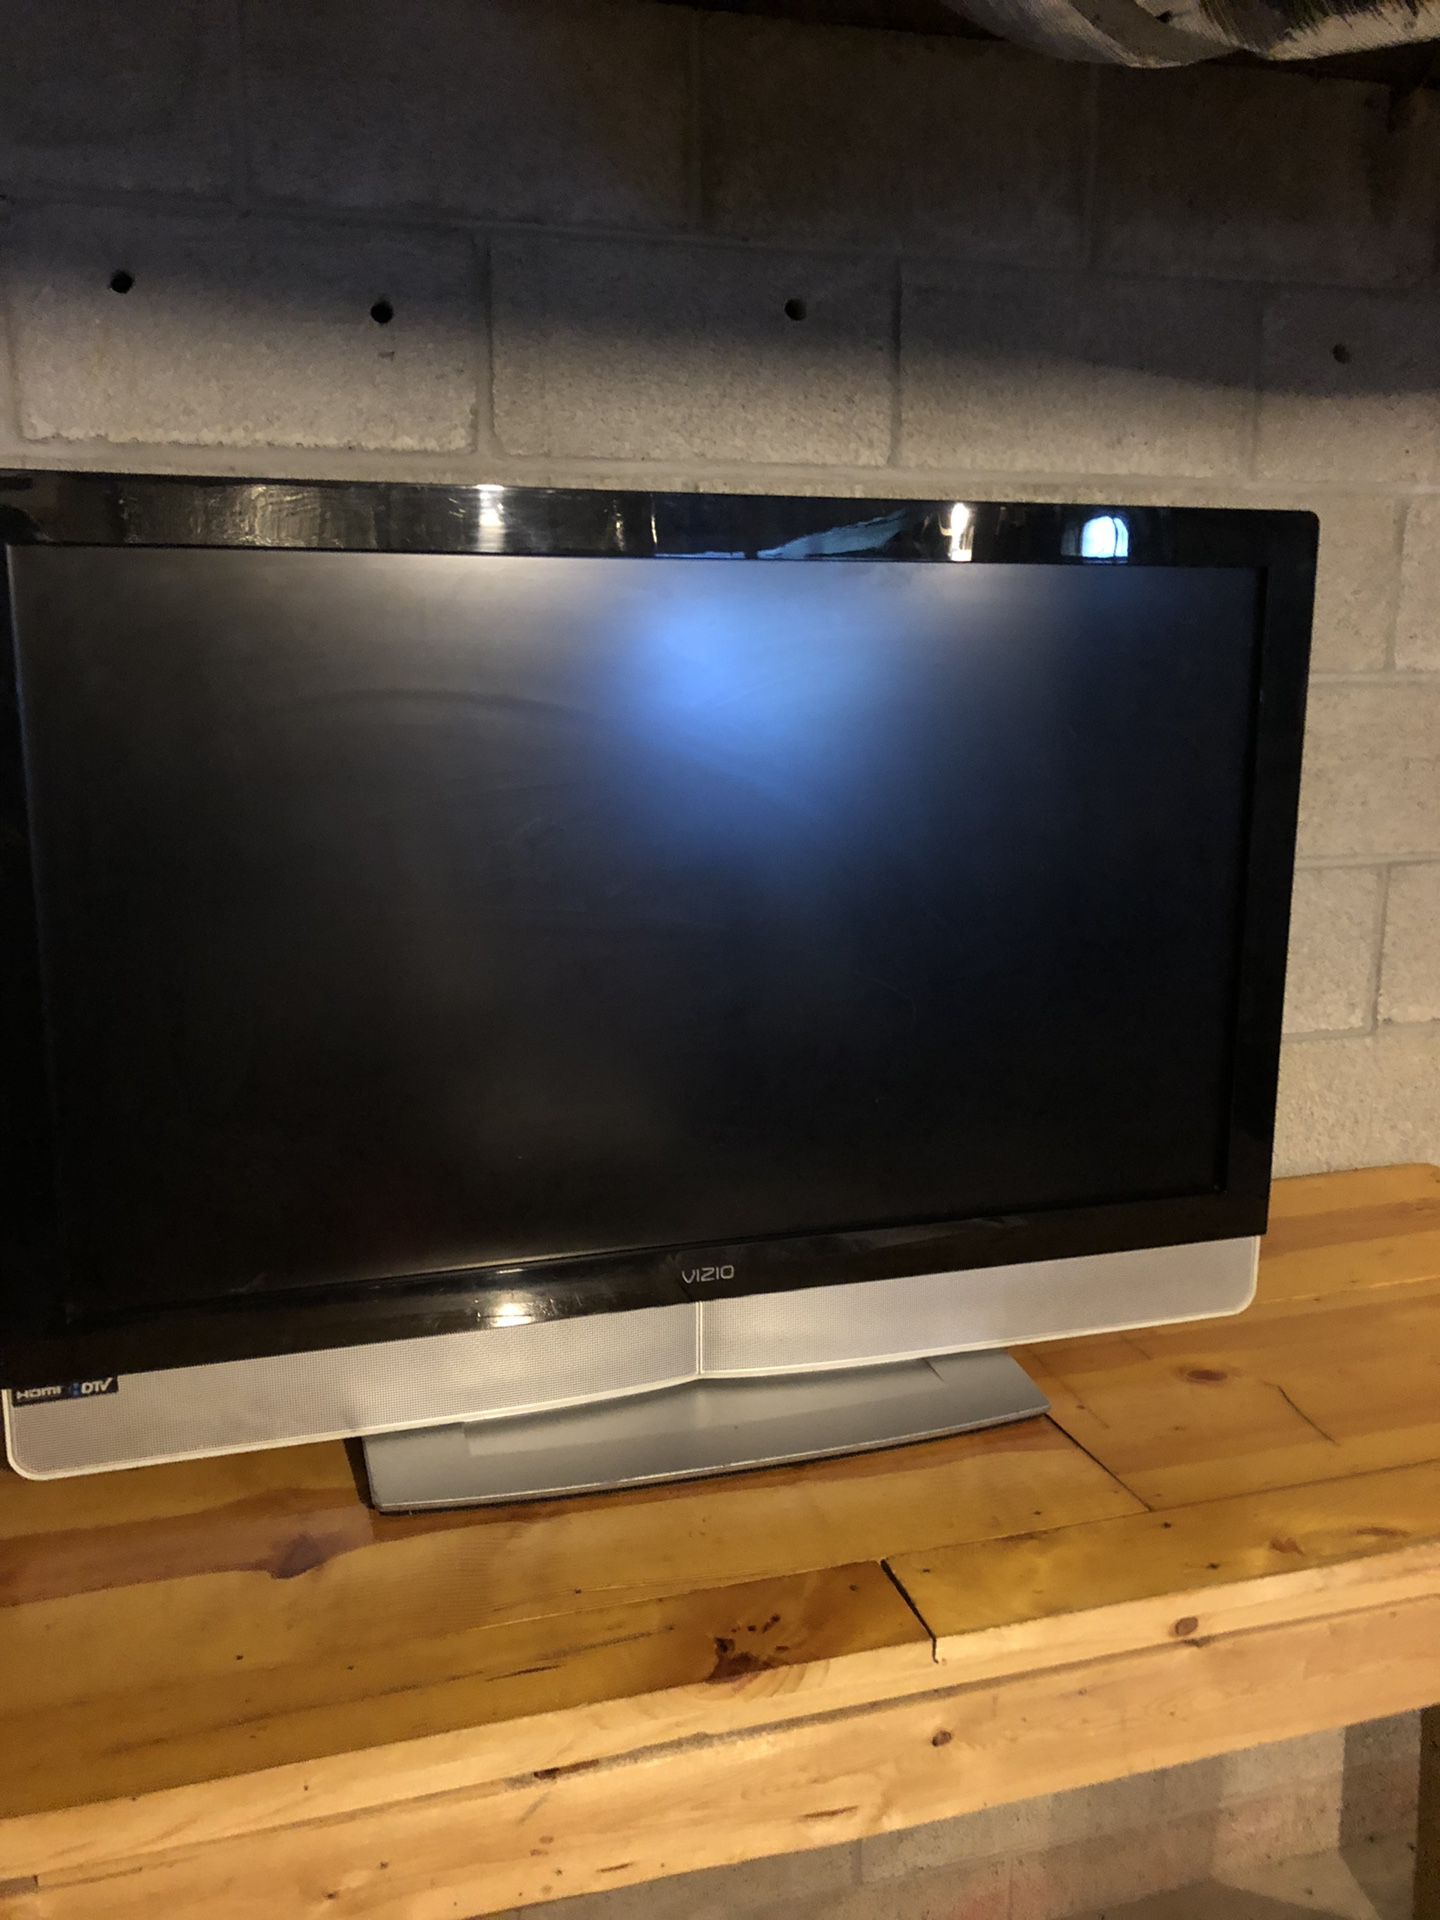 Vizio 42’ inch TV & PS3